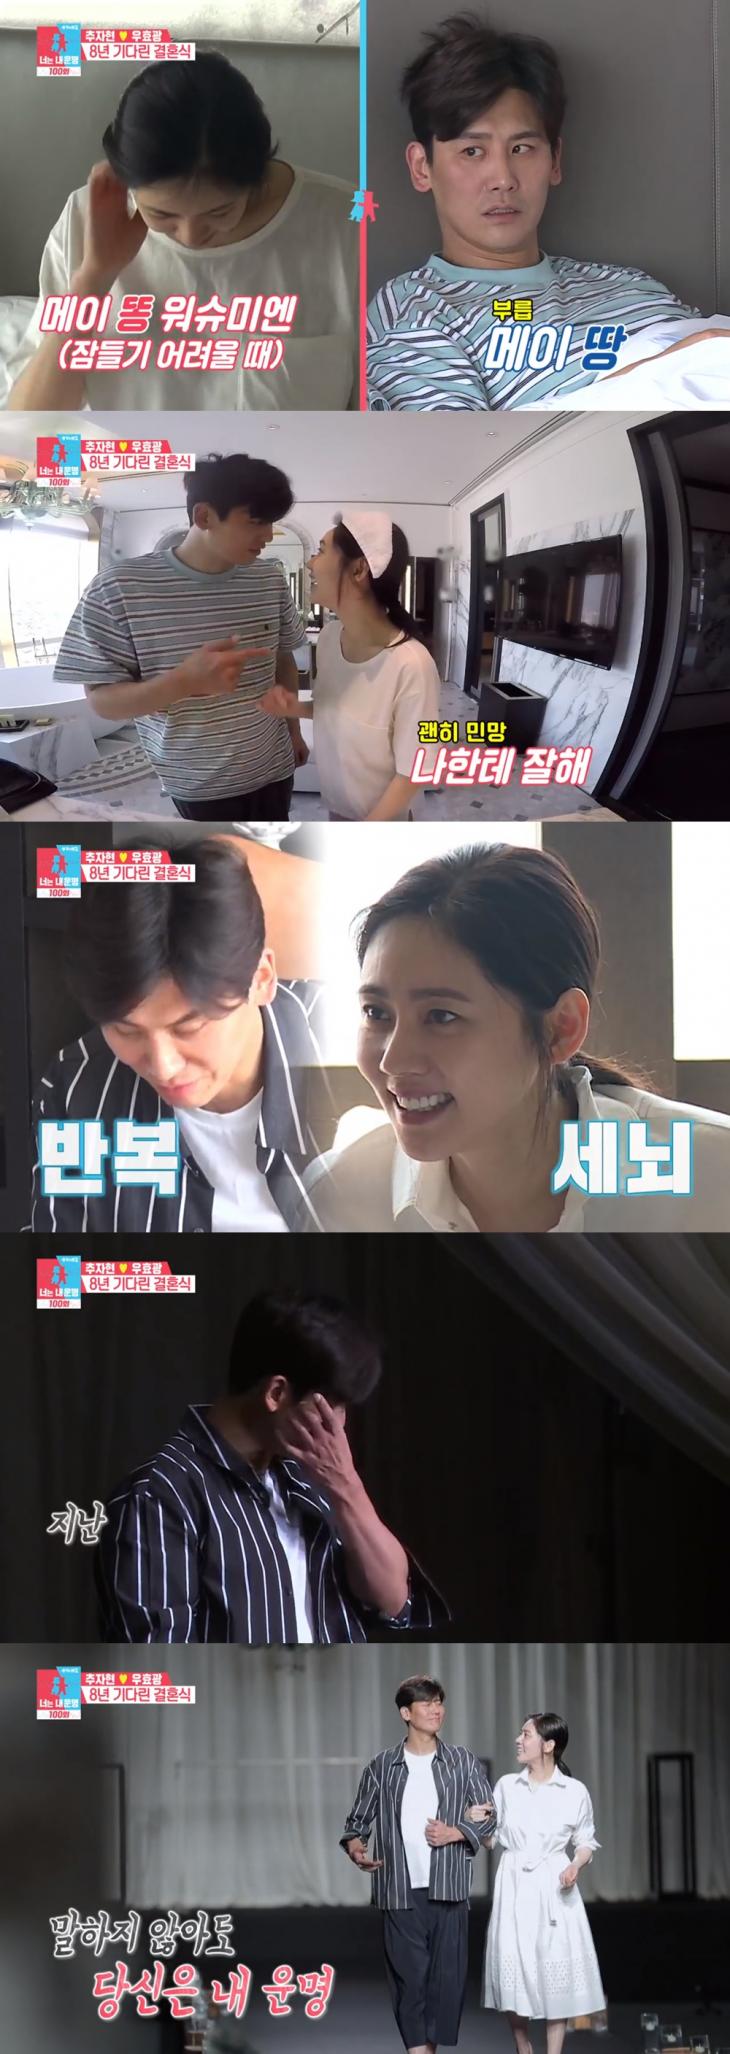 SBS '동상이몽 시즌2 - 너는 내운명' 방송 캡쳐